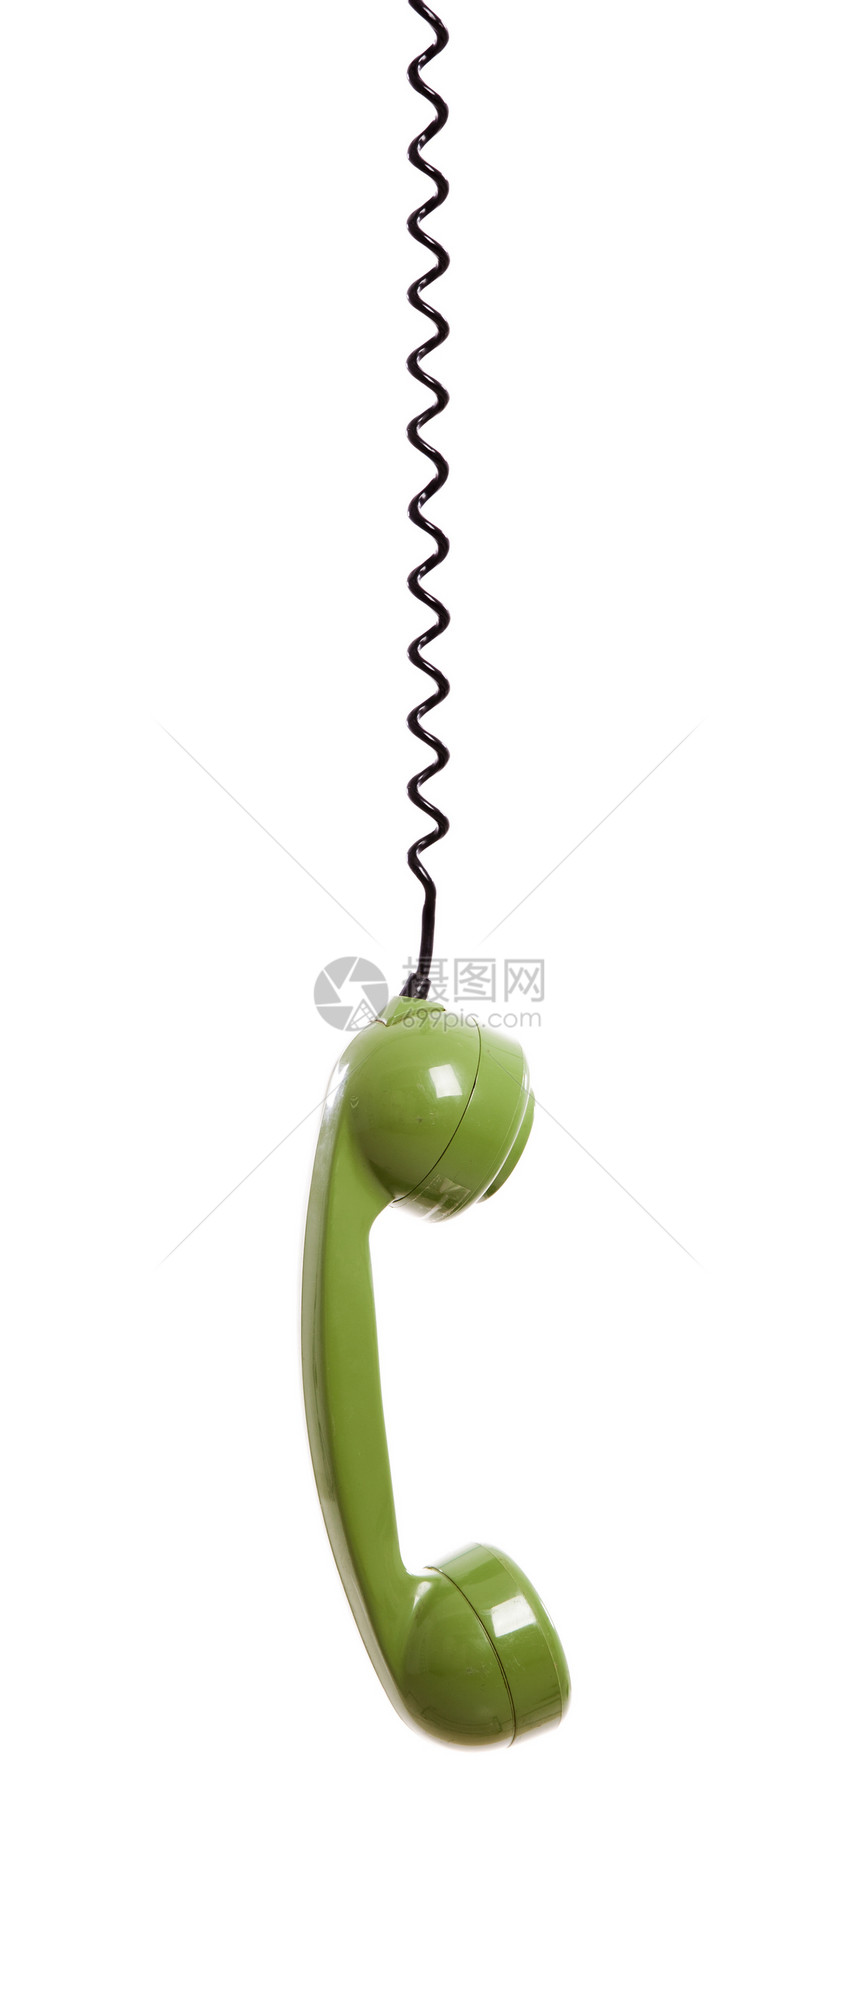 贵重电话讲话电讯拨号古董耳机技术听筒绳索乡愁办公室图片